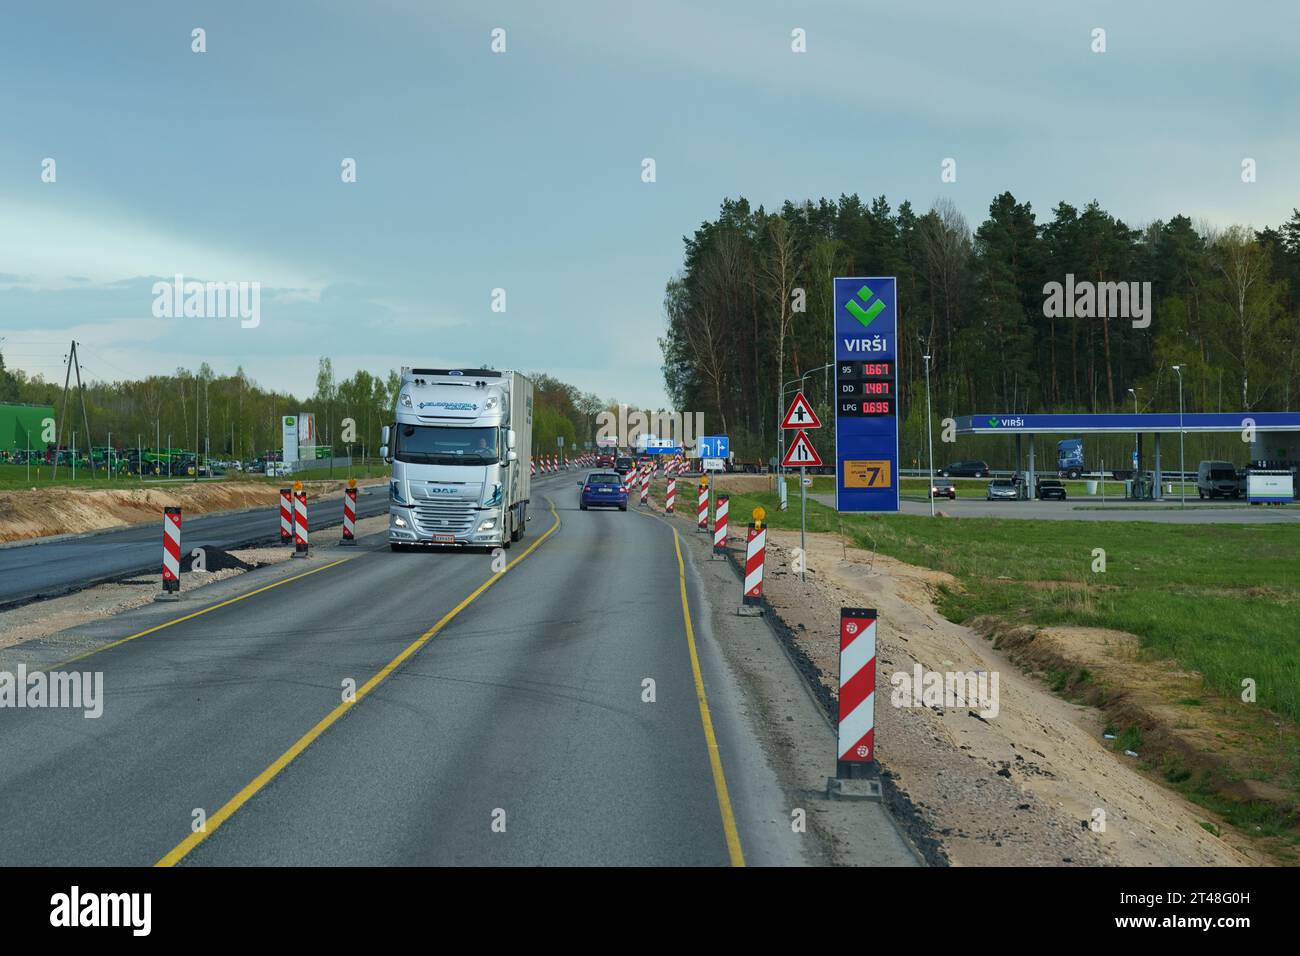 Vilnius, Lituania - 3 maggio 2023: Distributore di benzina virus vicino all'autostrada. Foto Stock